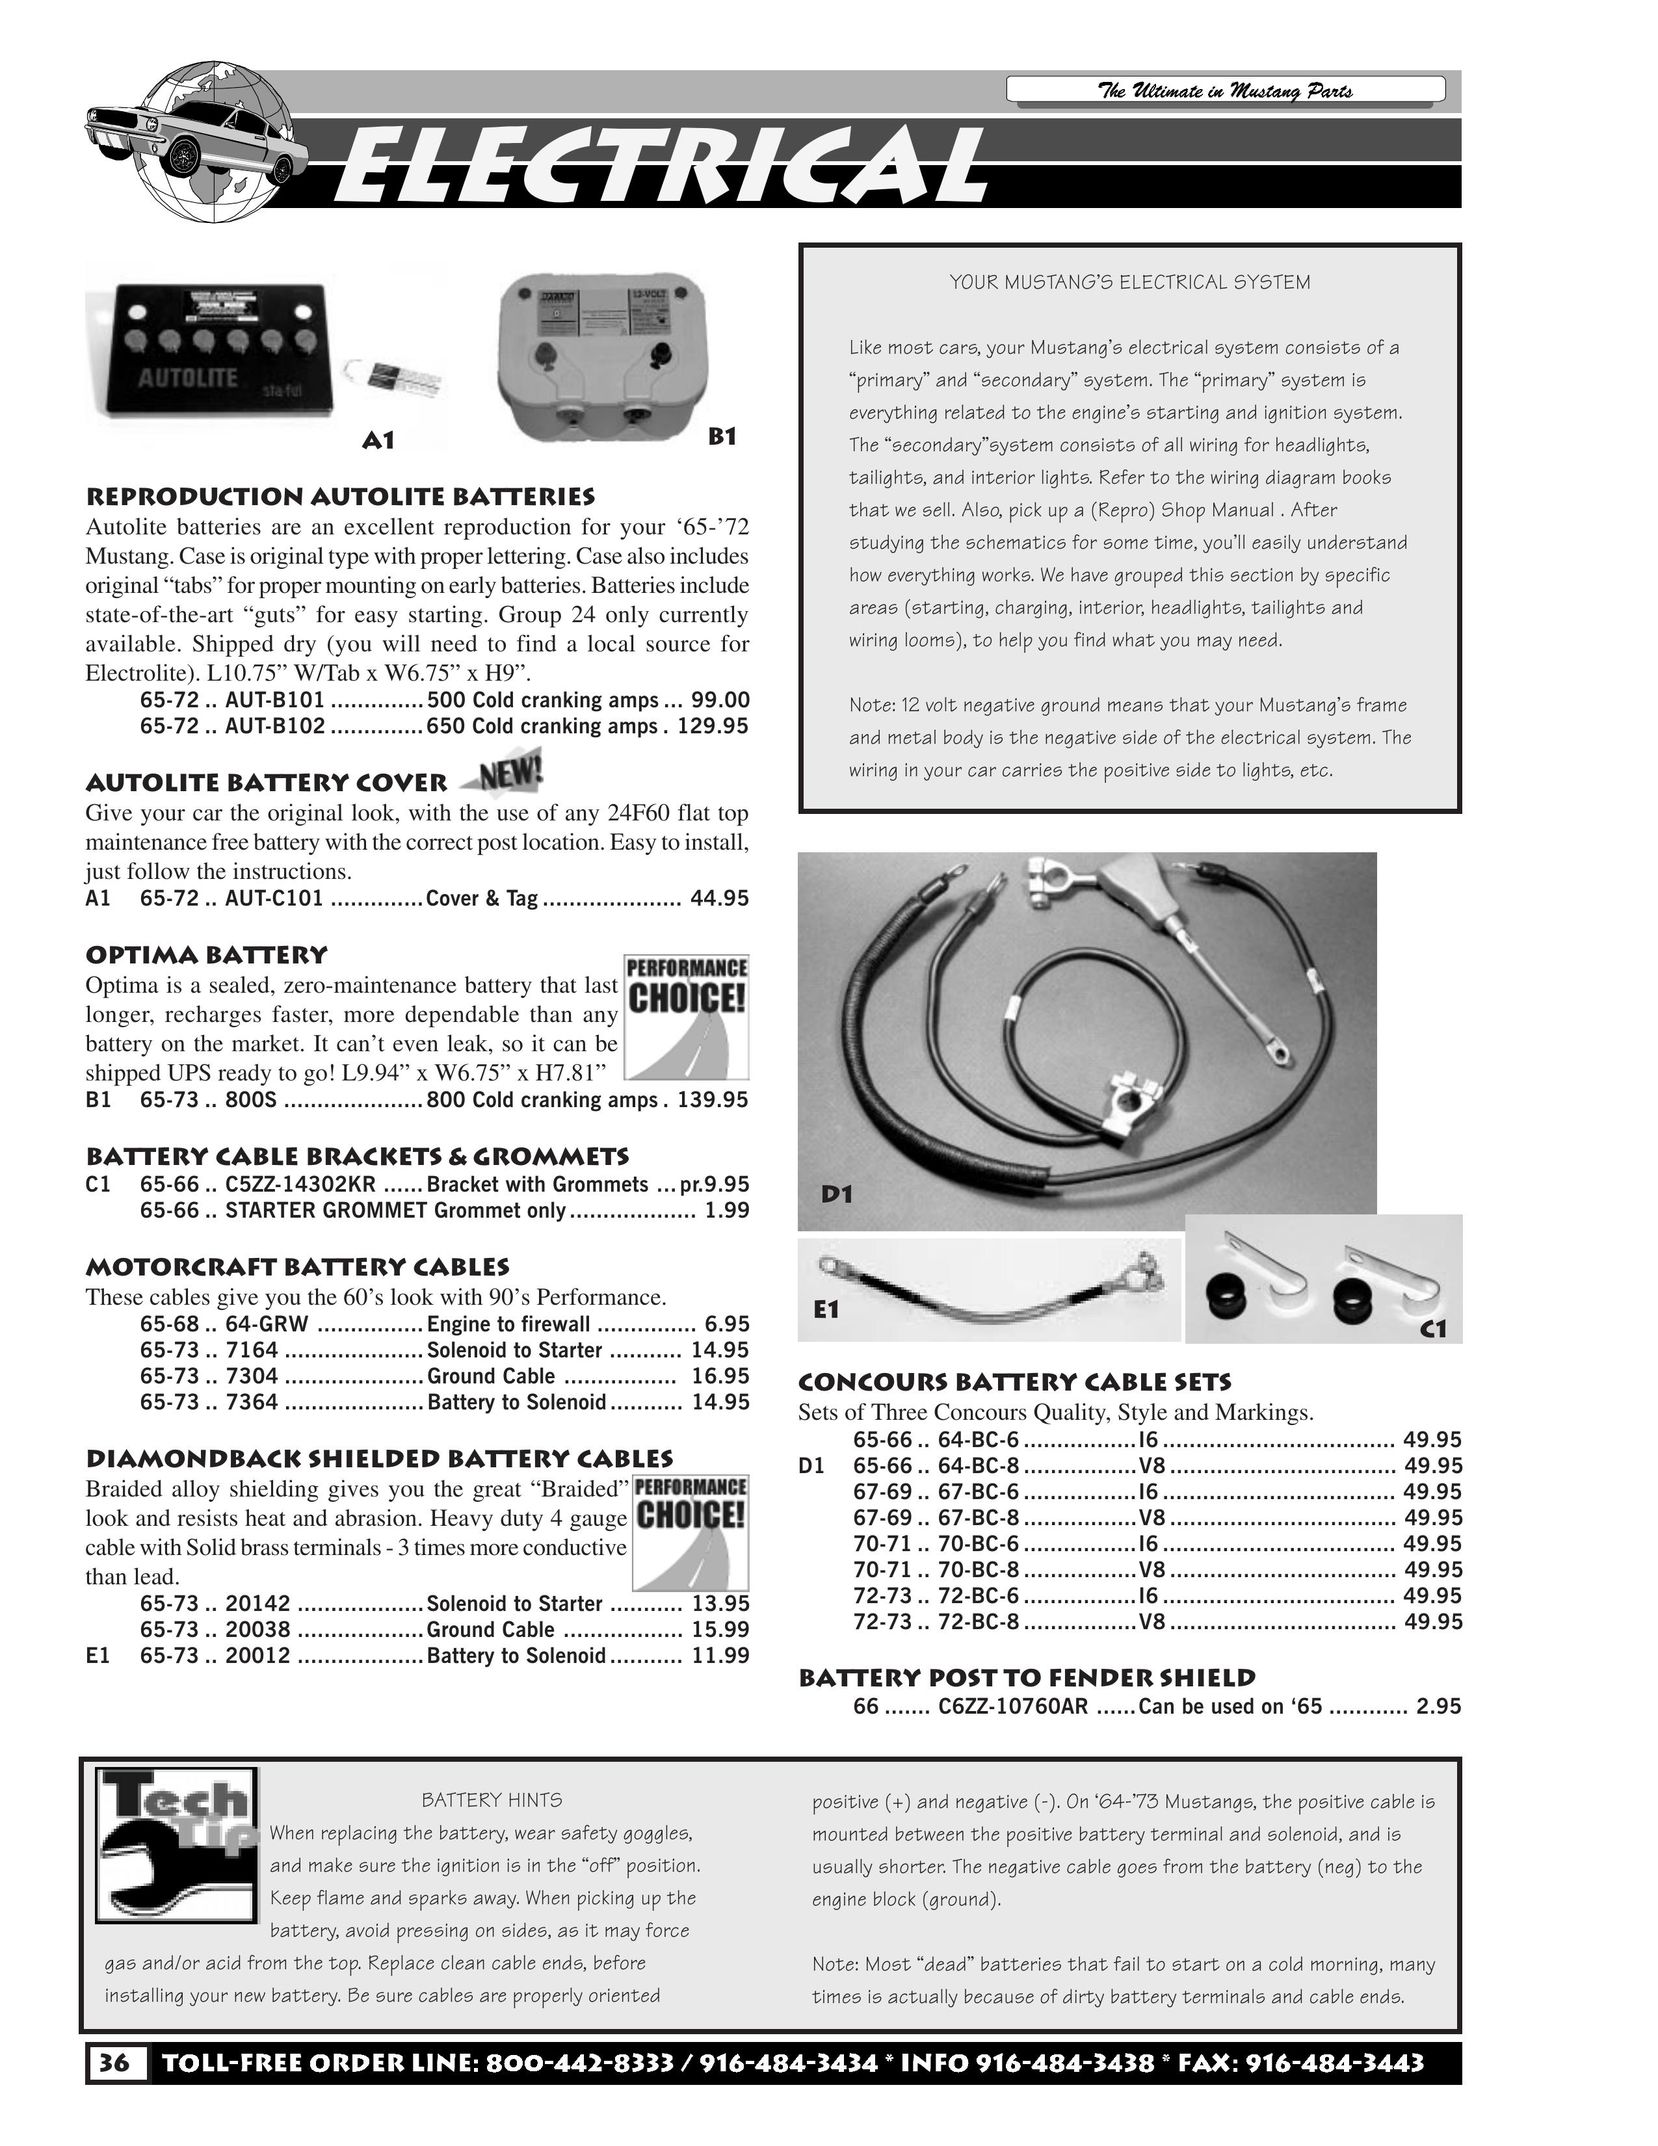 HP (Hewlett-Packard) C5ZZ Battery Charger User Manual